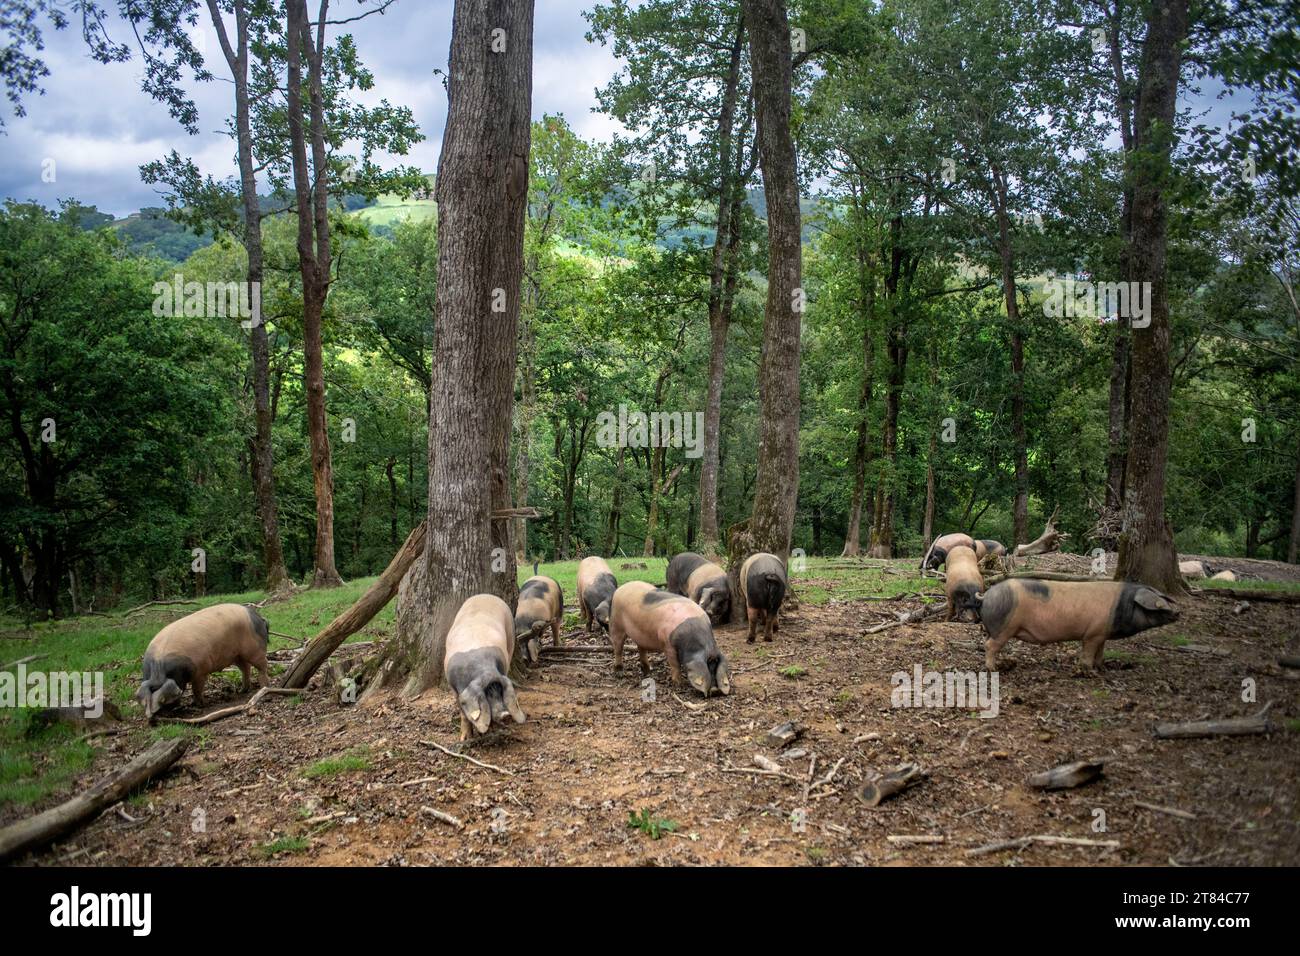 France, Pyrénées Atlantiques, pays Basque, vallée des Aldudes, Uronako Borda élevage de porcs noirs basques pour la production de jambon Kintoa AOC, joung Banque D'Images